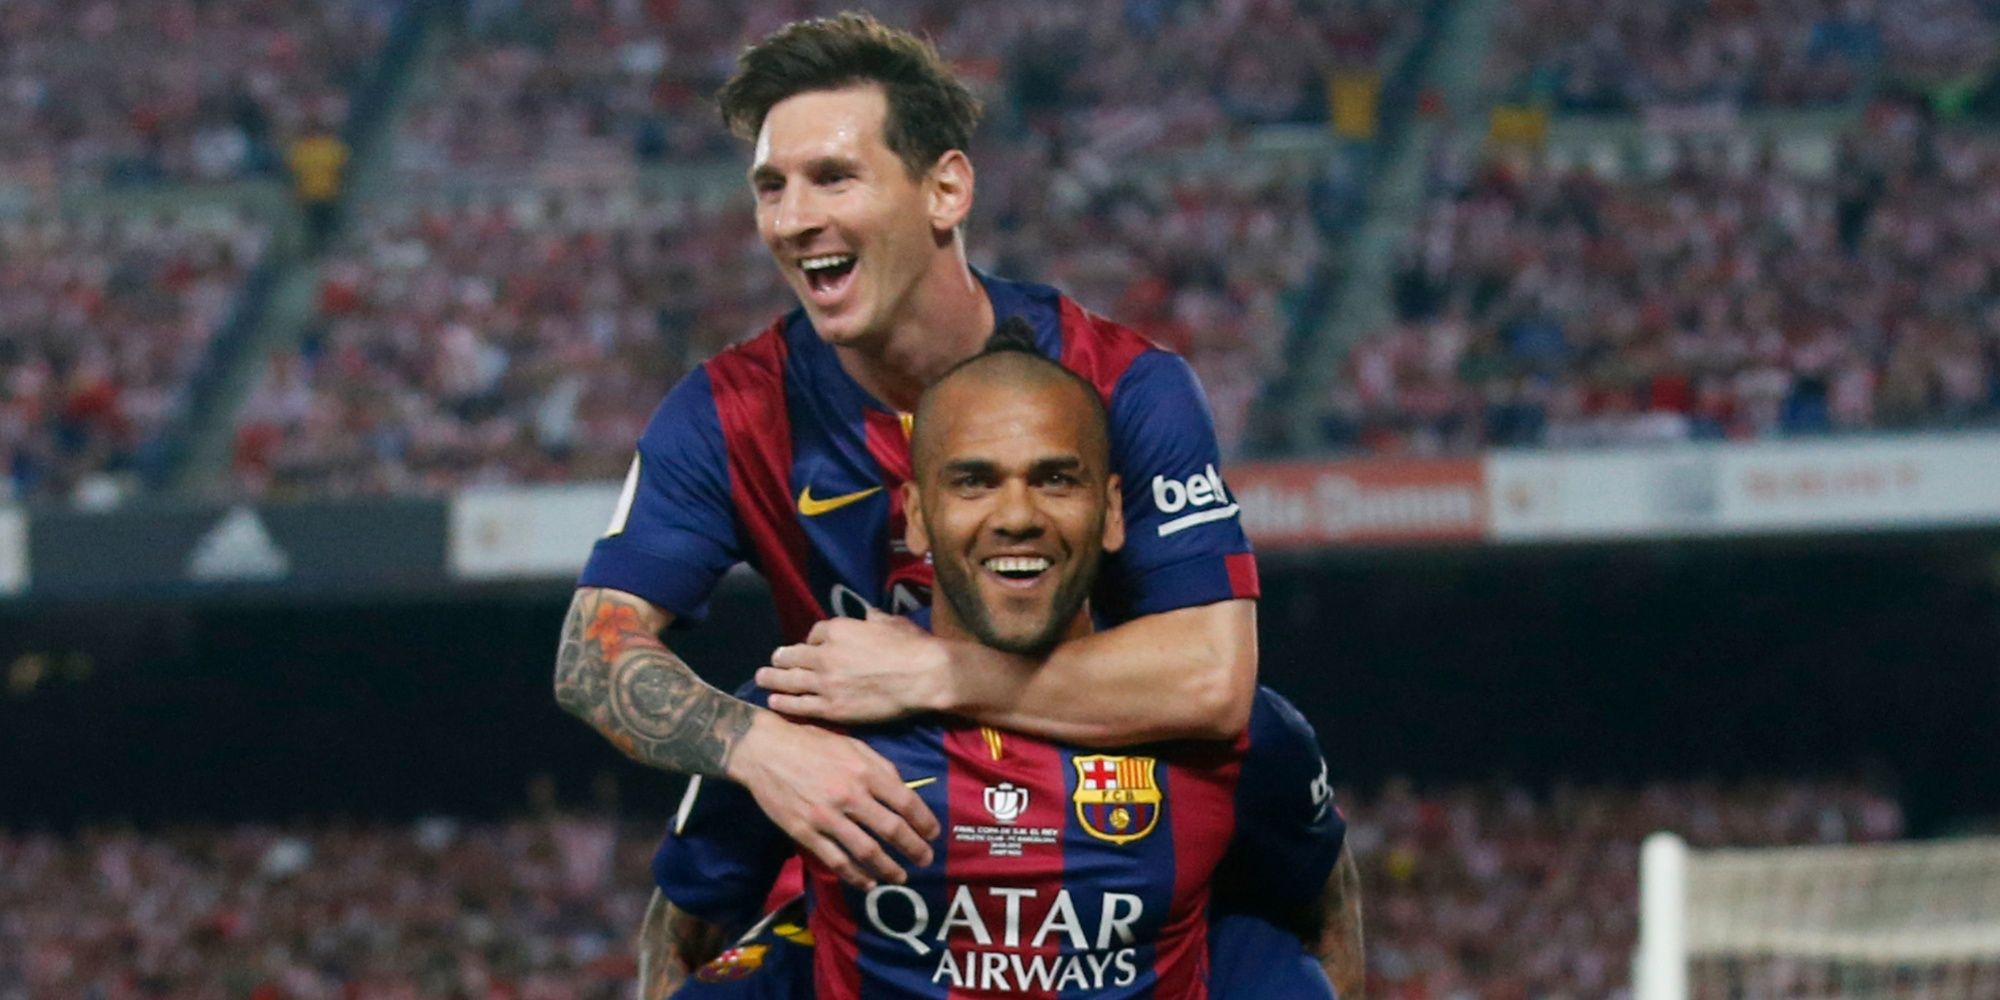 Dani Alves and Lionel Messi celebrate